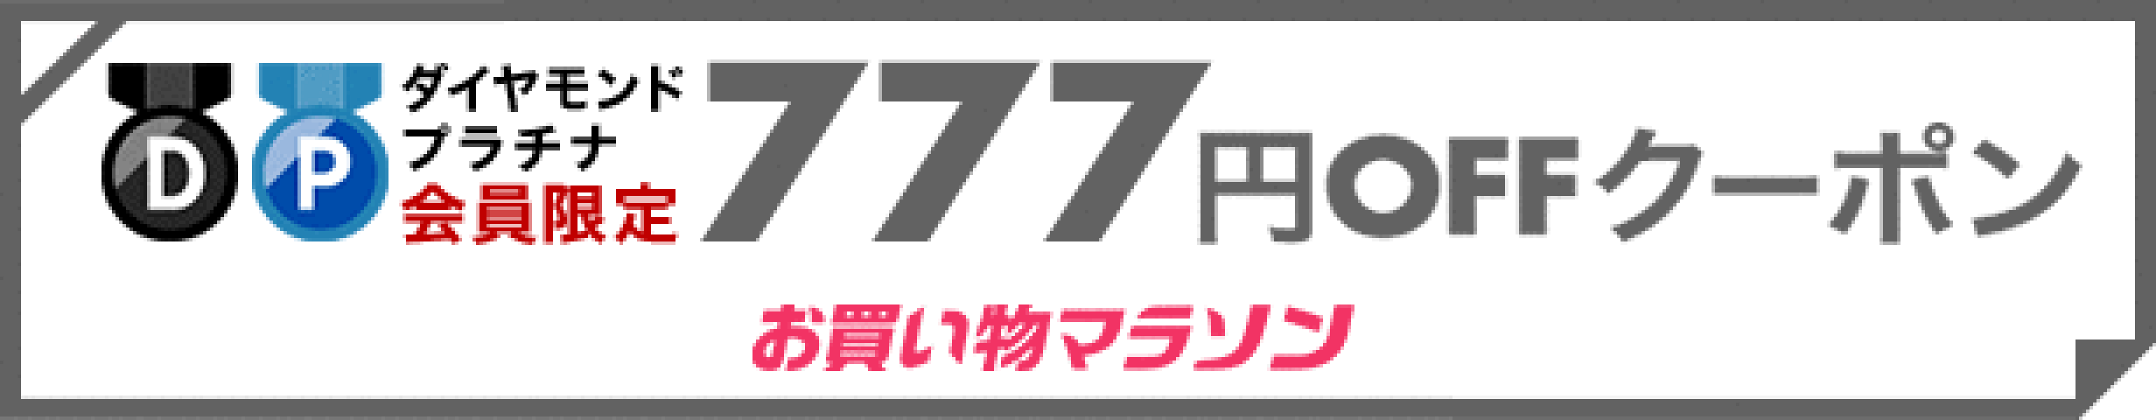 【お買い物マラソン】ダイヤモンド・プラチナ会員様限定  777円OFFクーポン